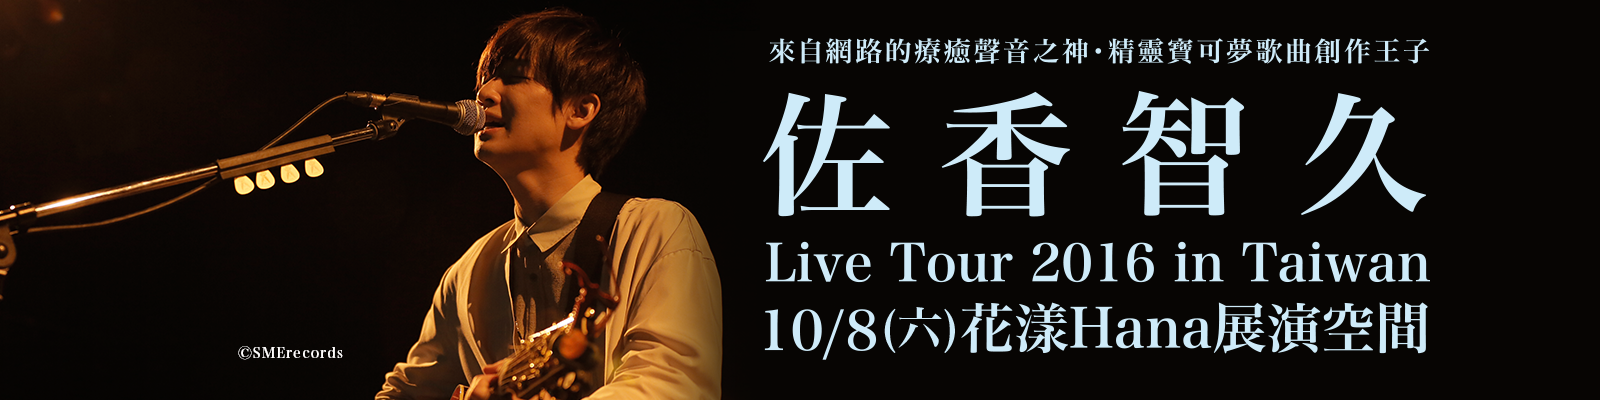 贈票《佐香智久Live Tour 2016 in Taiwan》抽獎活動